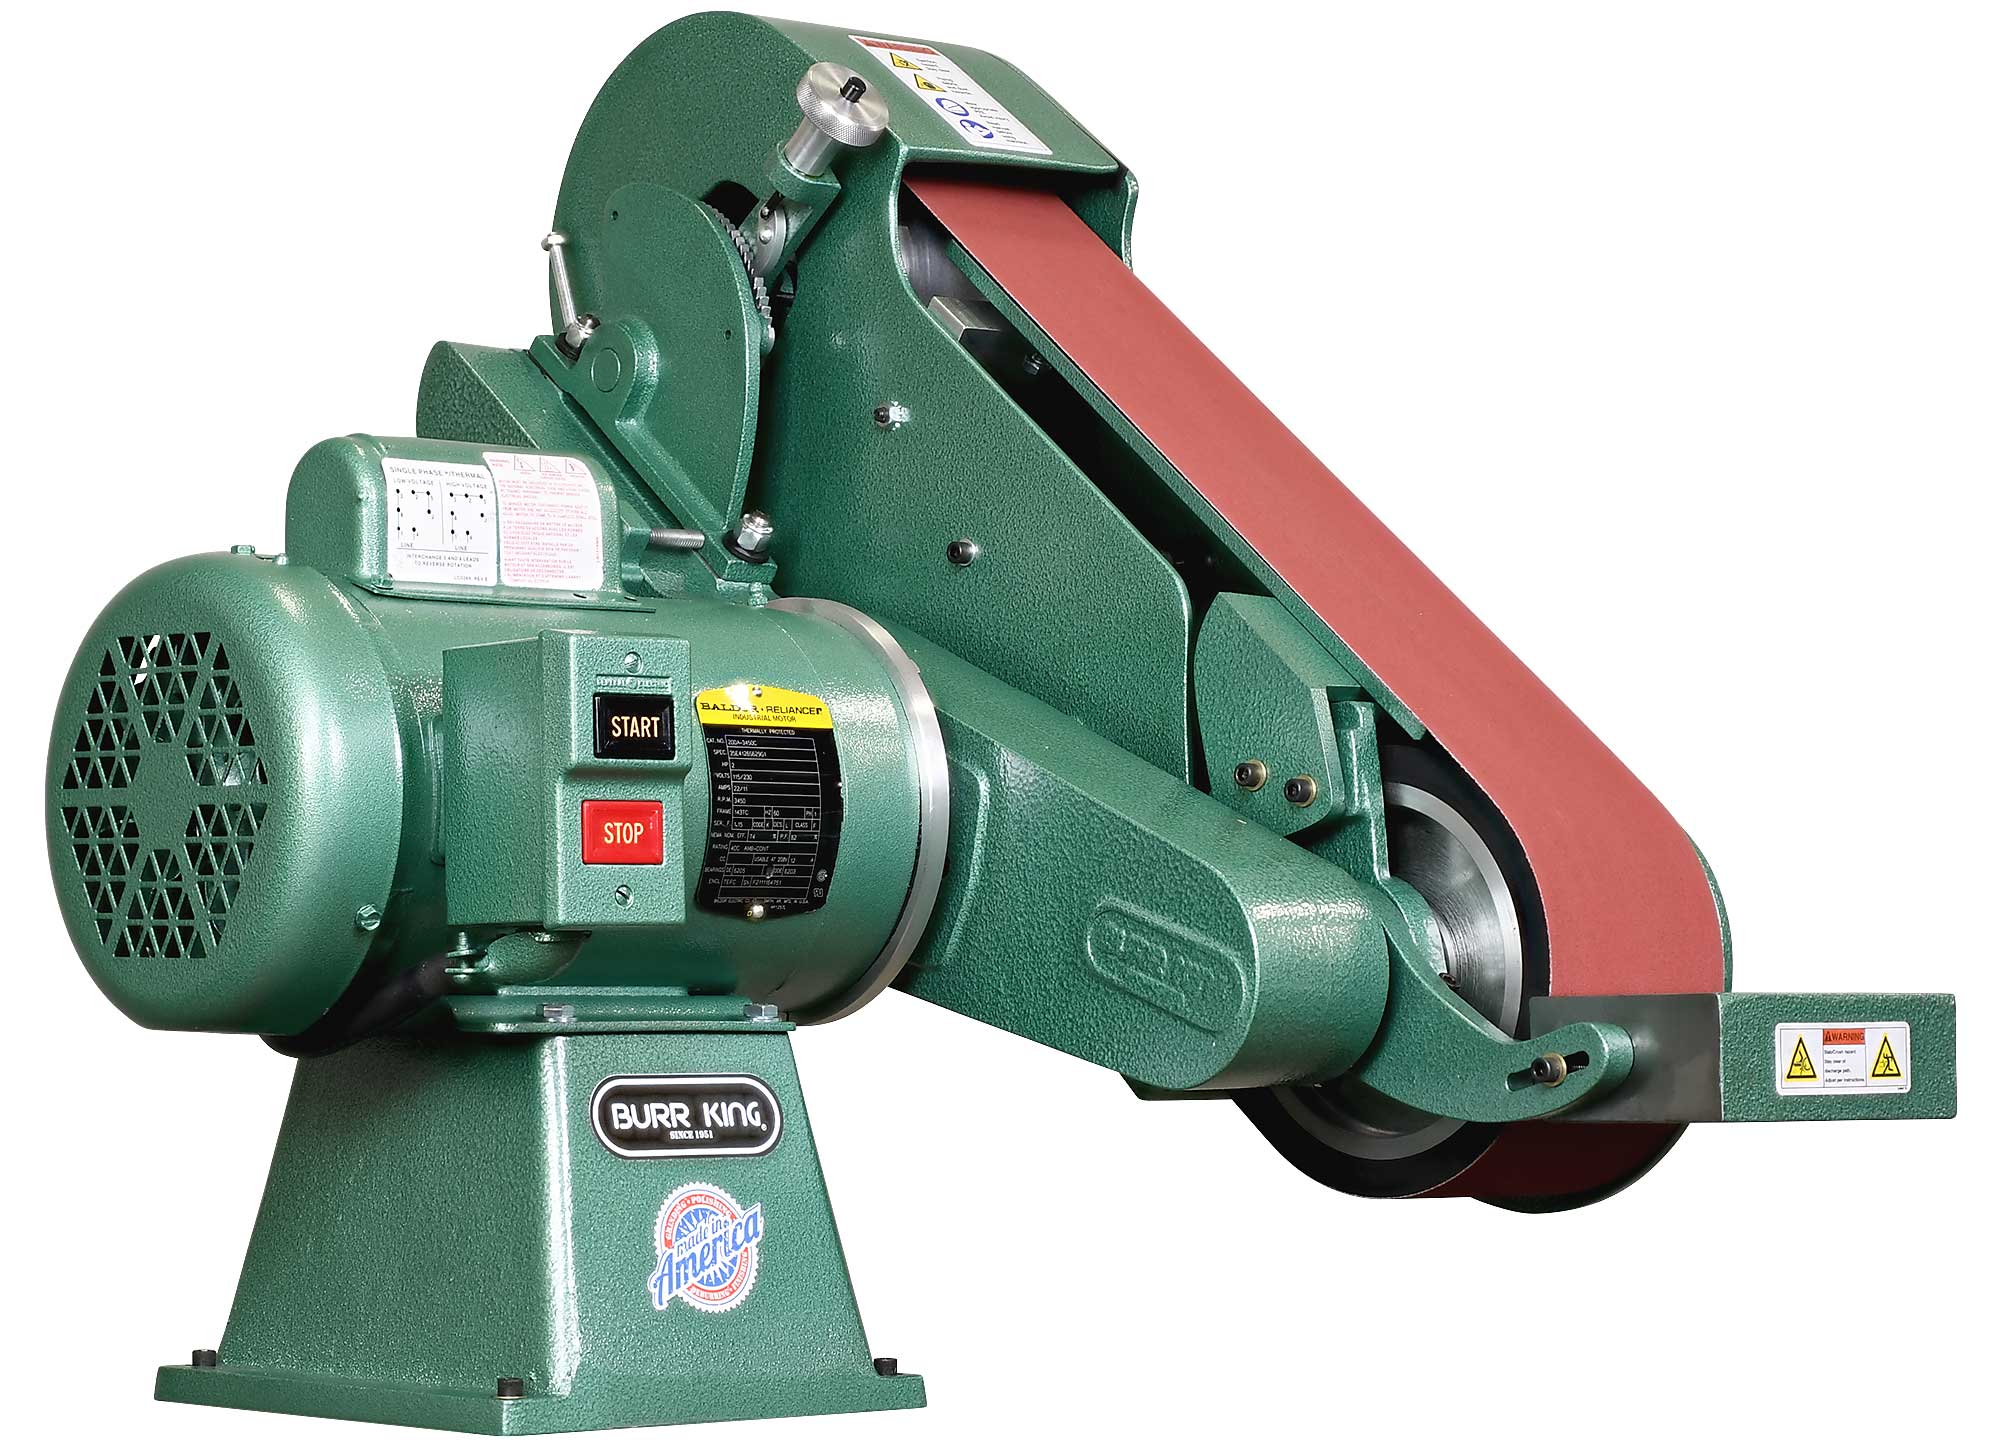 95030 - 960-400 belt grinder / sander with included workrest